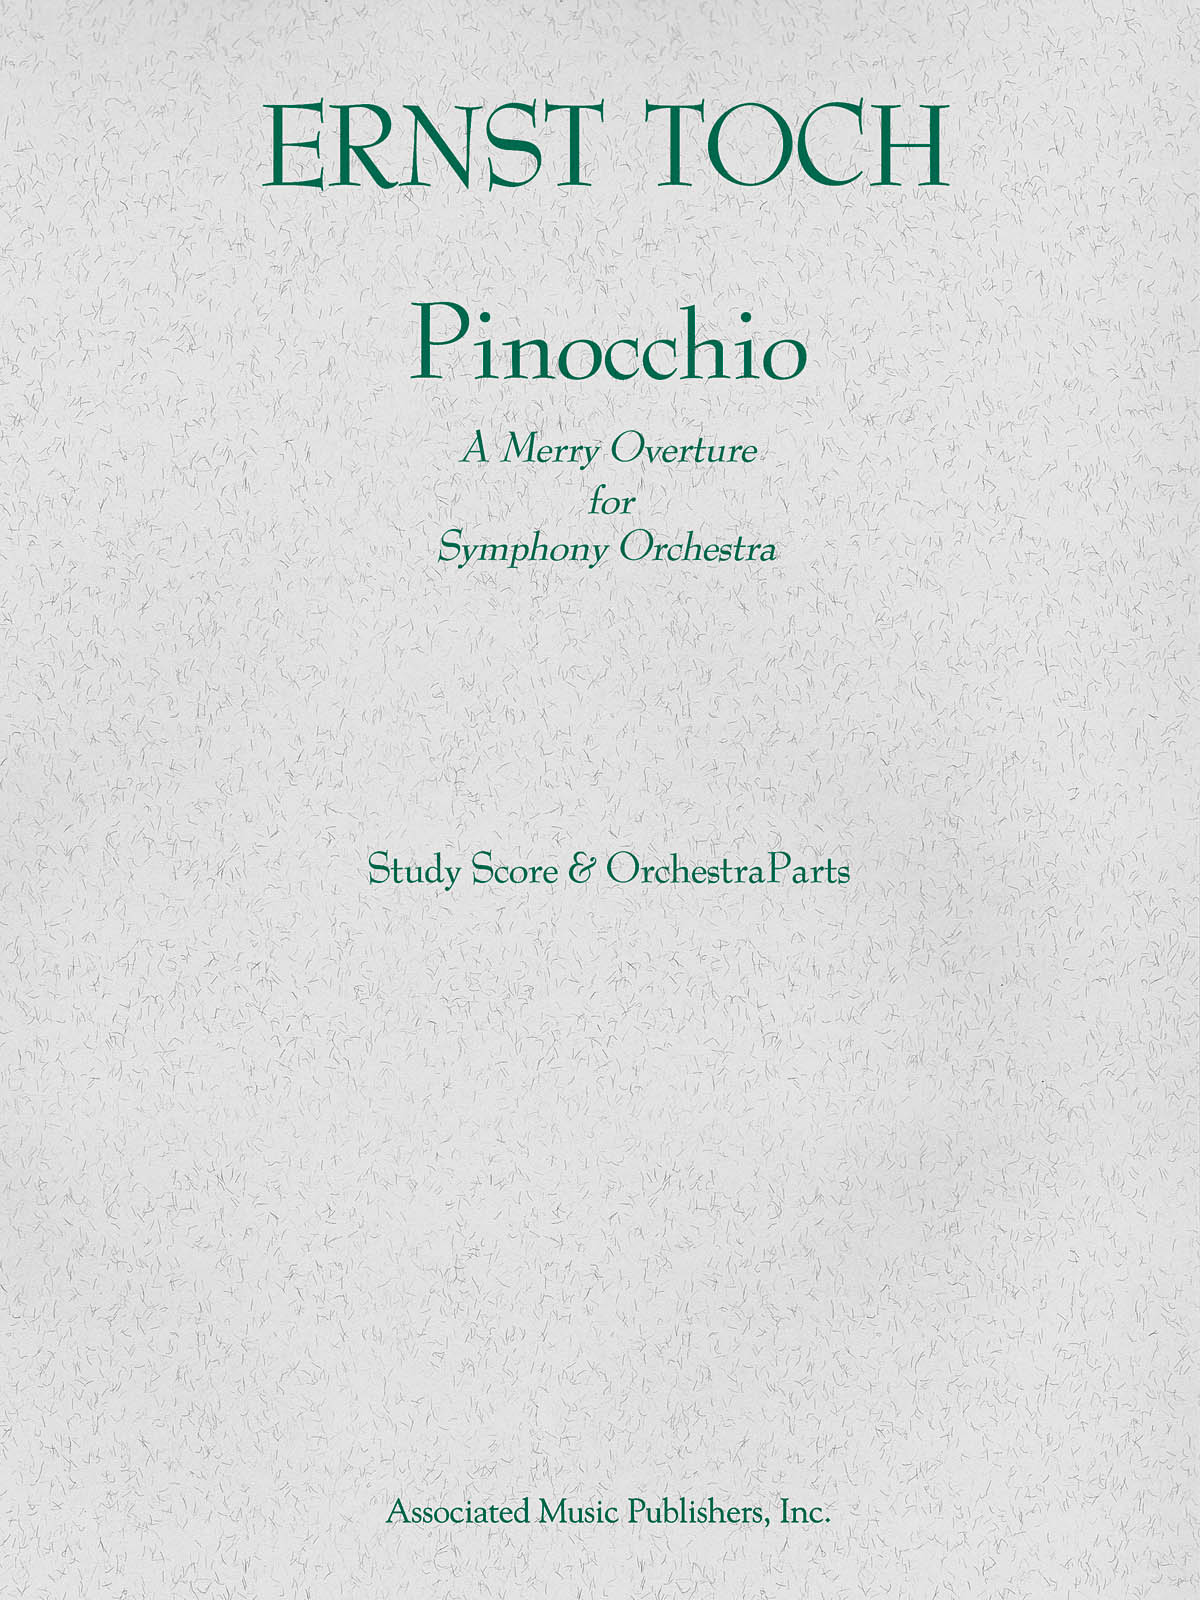 Ernst Toch: Pinocchio Overture (Study Score)